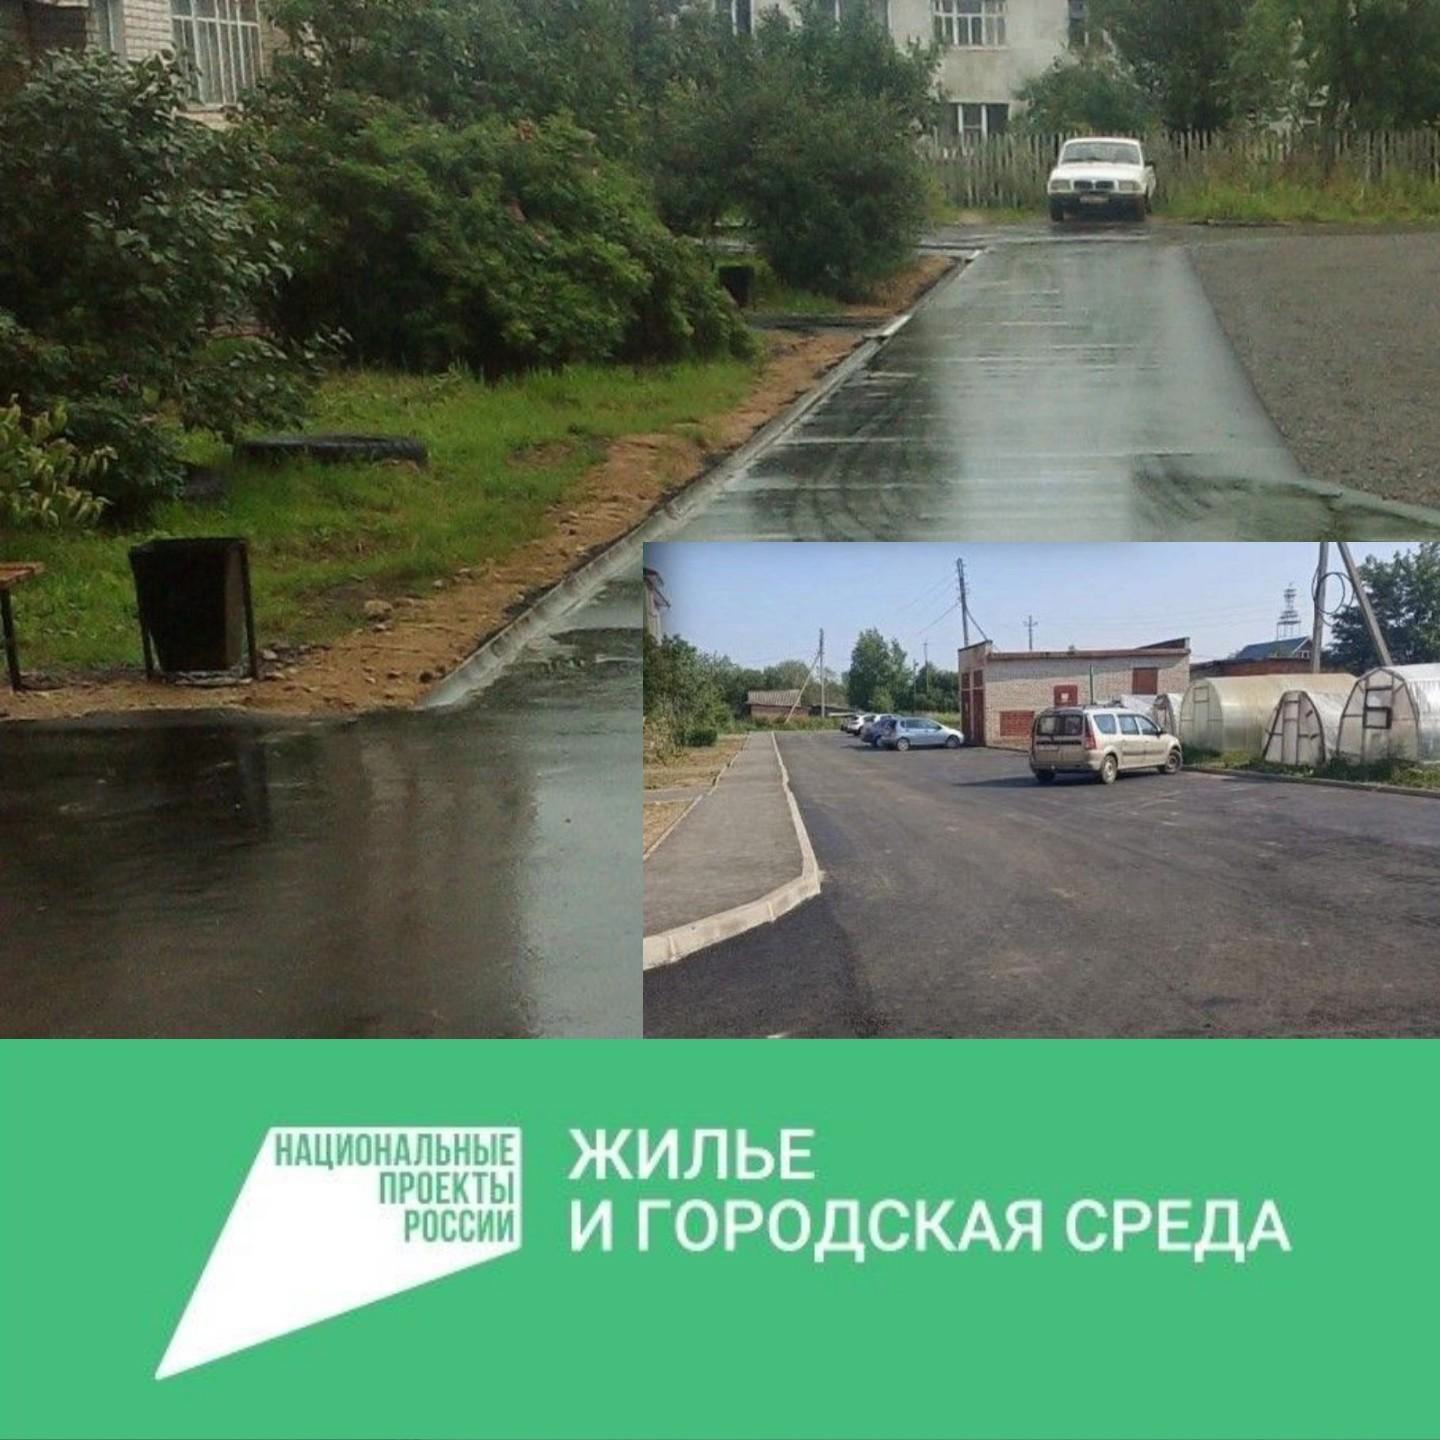 В Грязовецком округе продолжится работа по благоустройству дворовых территорий.